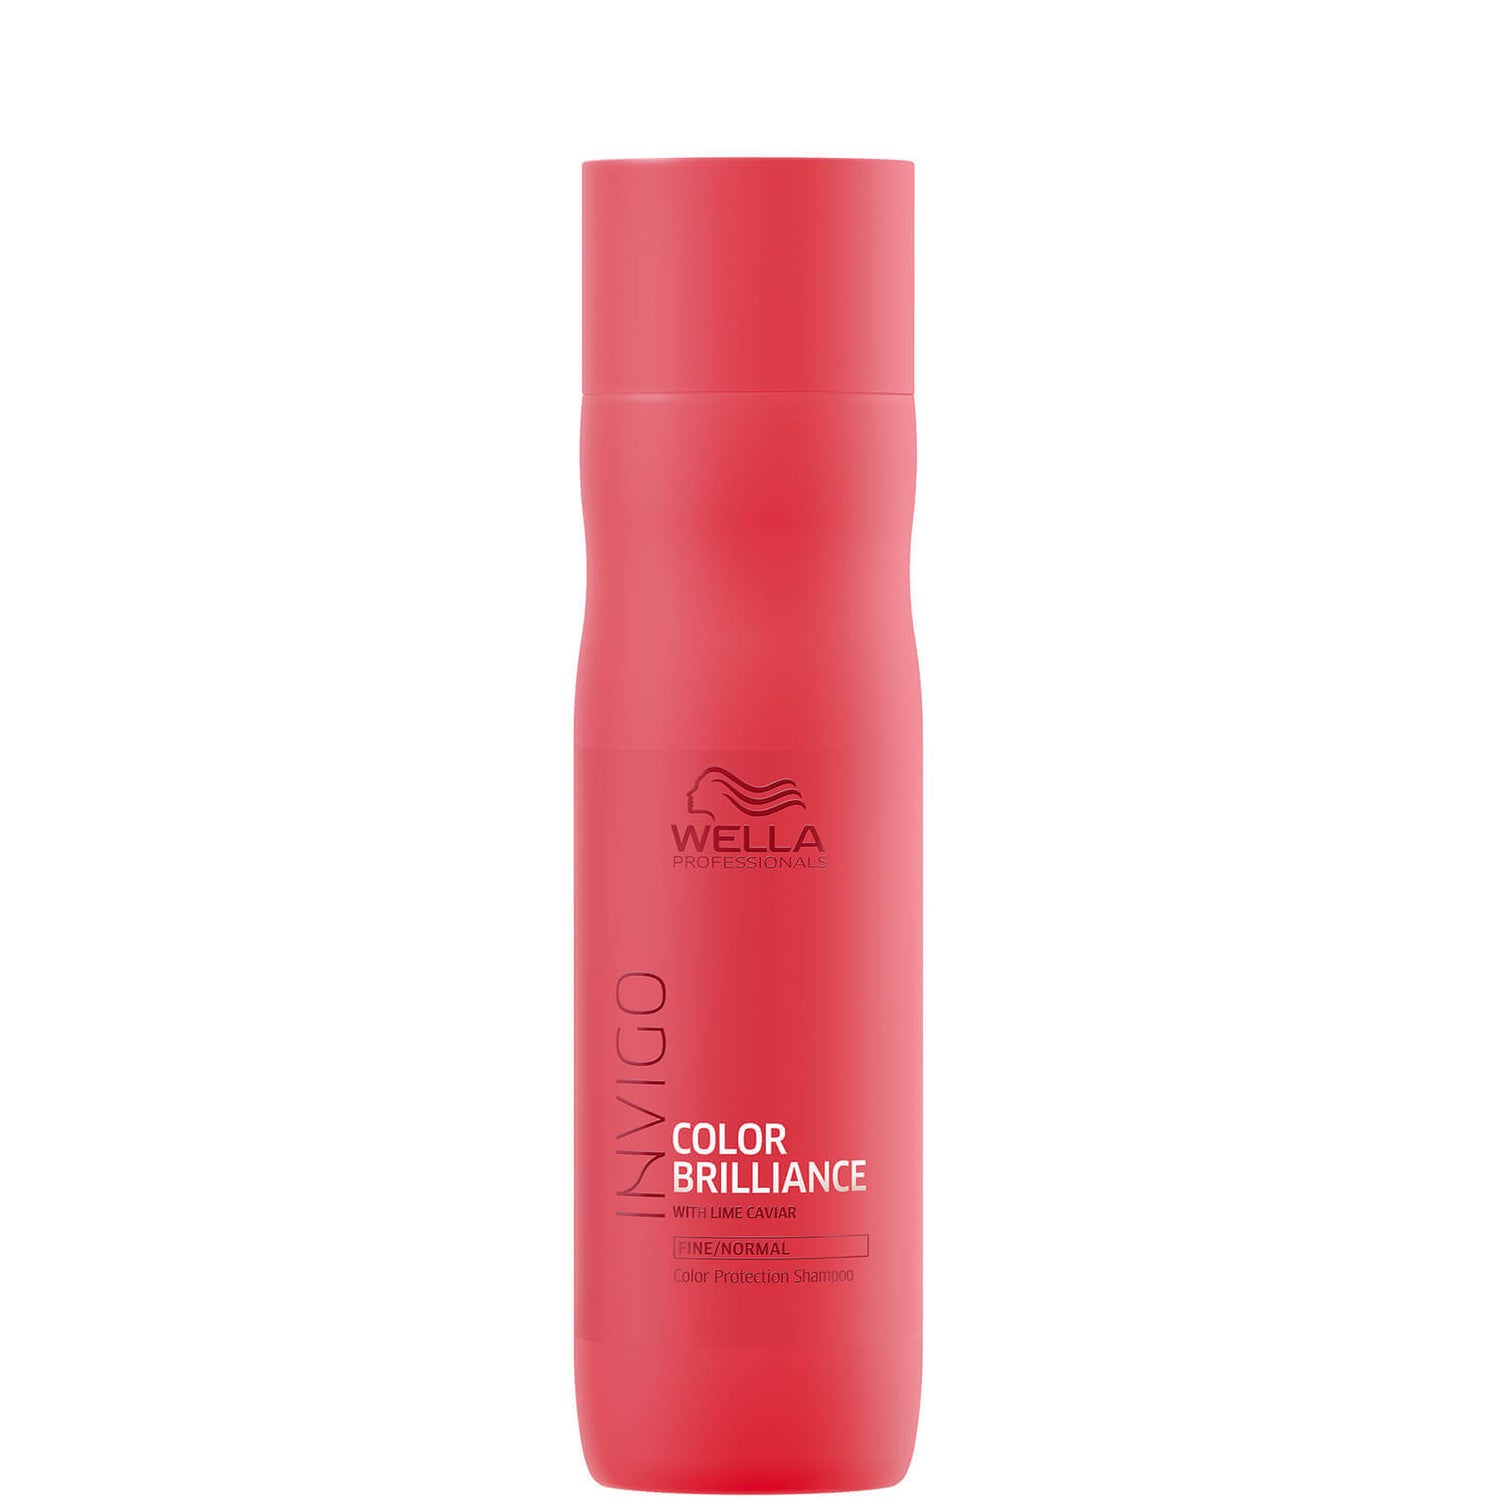 Shampooing pour cheveux fins INVIGO Color Brilliance Wella Professionals 250 ml